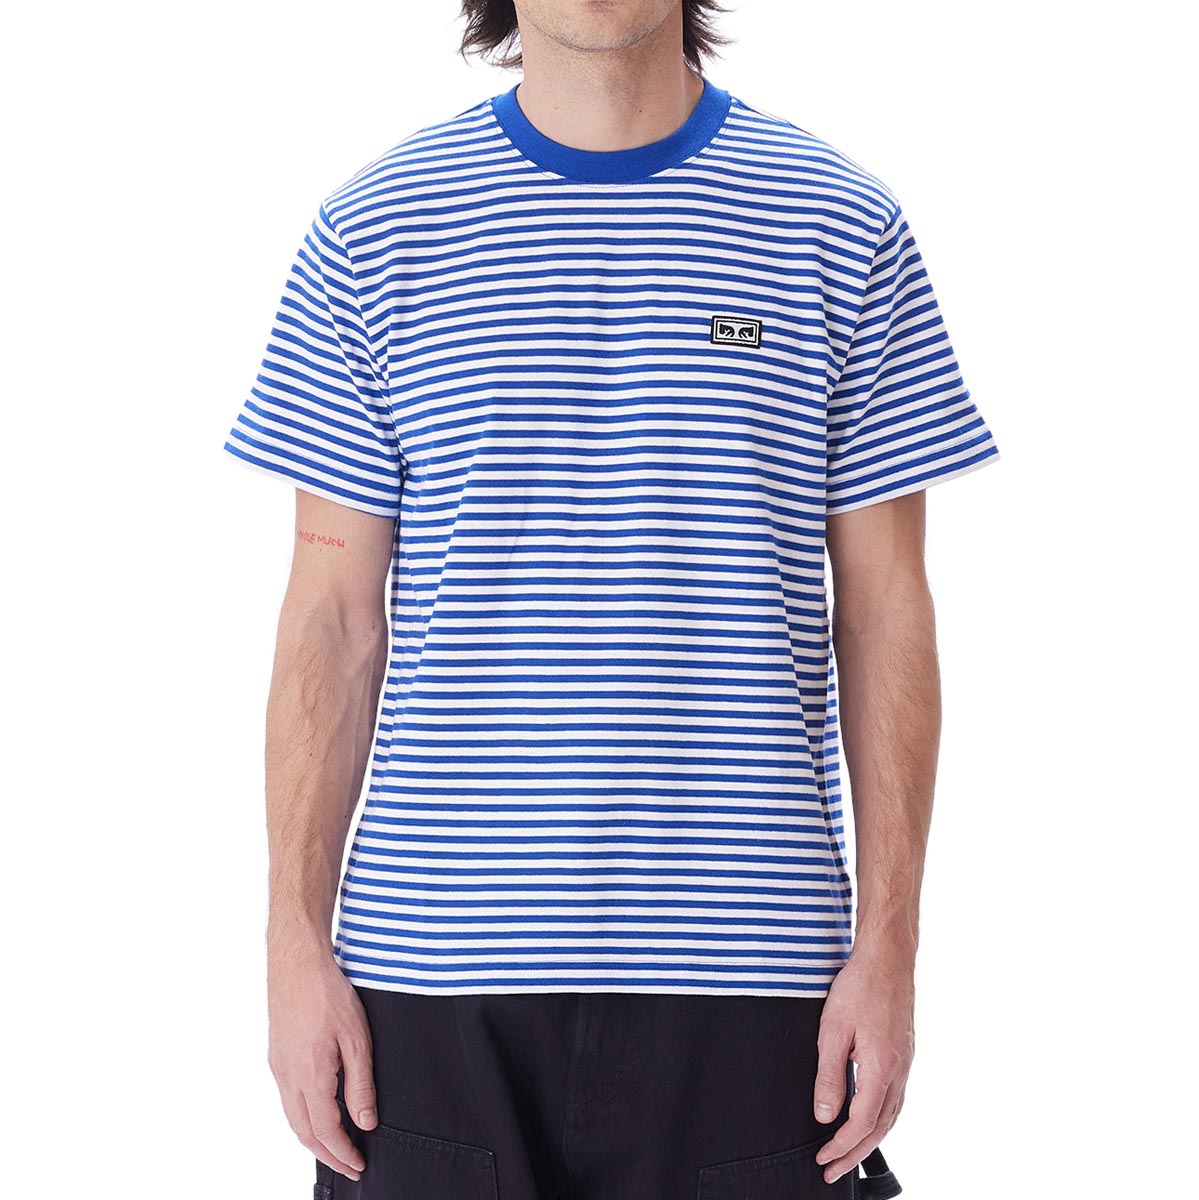 Obey Established Works Eyes Stripe Shirt - Surf Blue Multi image 1